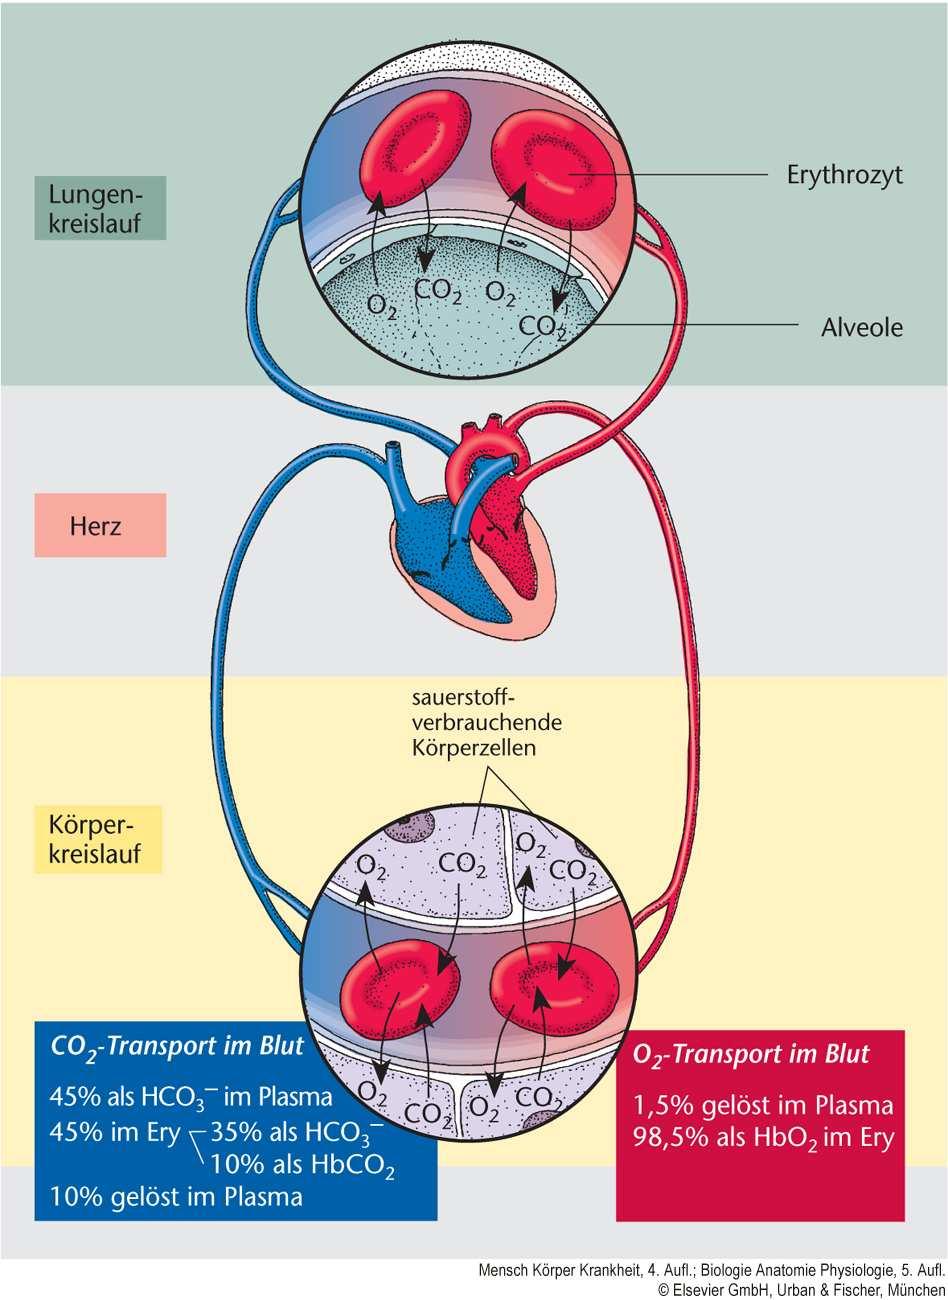 Teilfunktionen der Lunge o Ventilation Belüftung der am Gasaustausch teilnehmenden Strukturen. o Perfusion Adäquate Durchblutung des Kapillarbetts der Alveole.